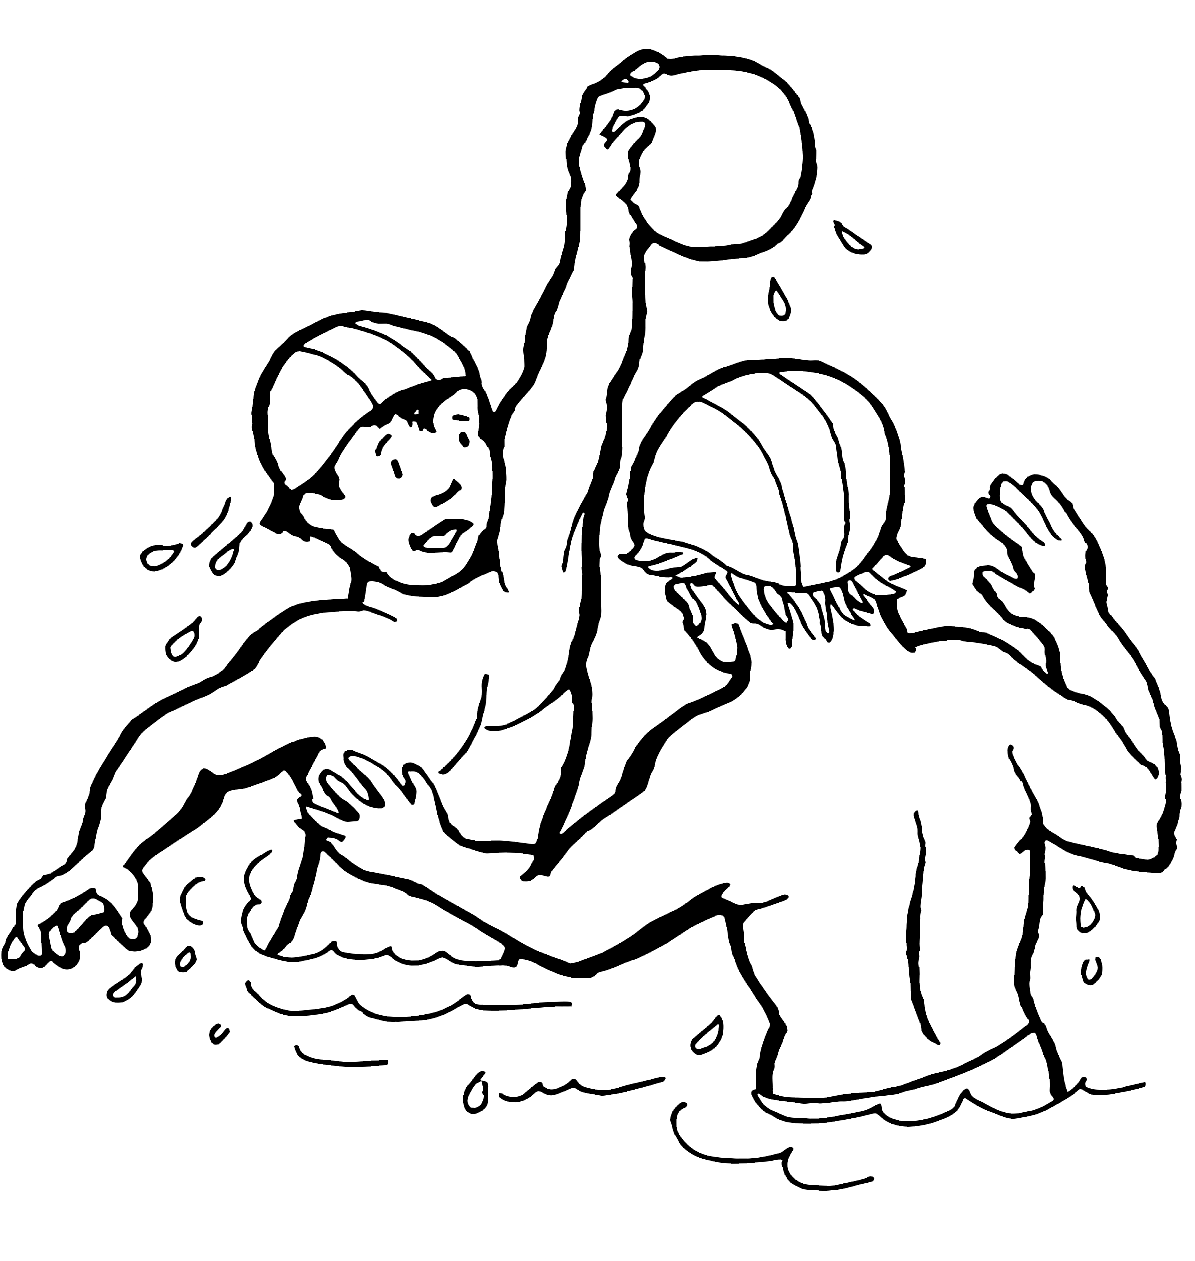 Kinder spielen Wasserball von Water Sports